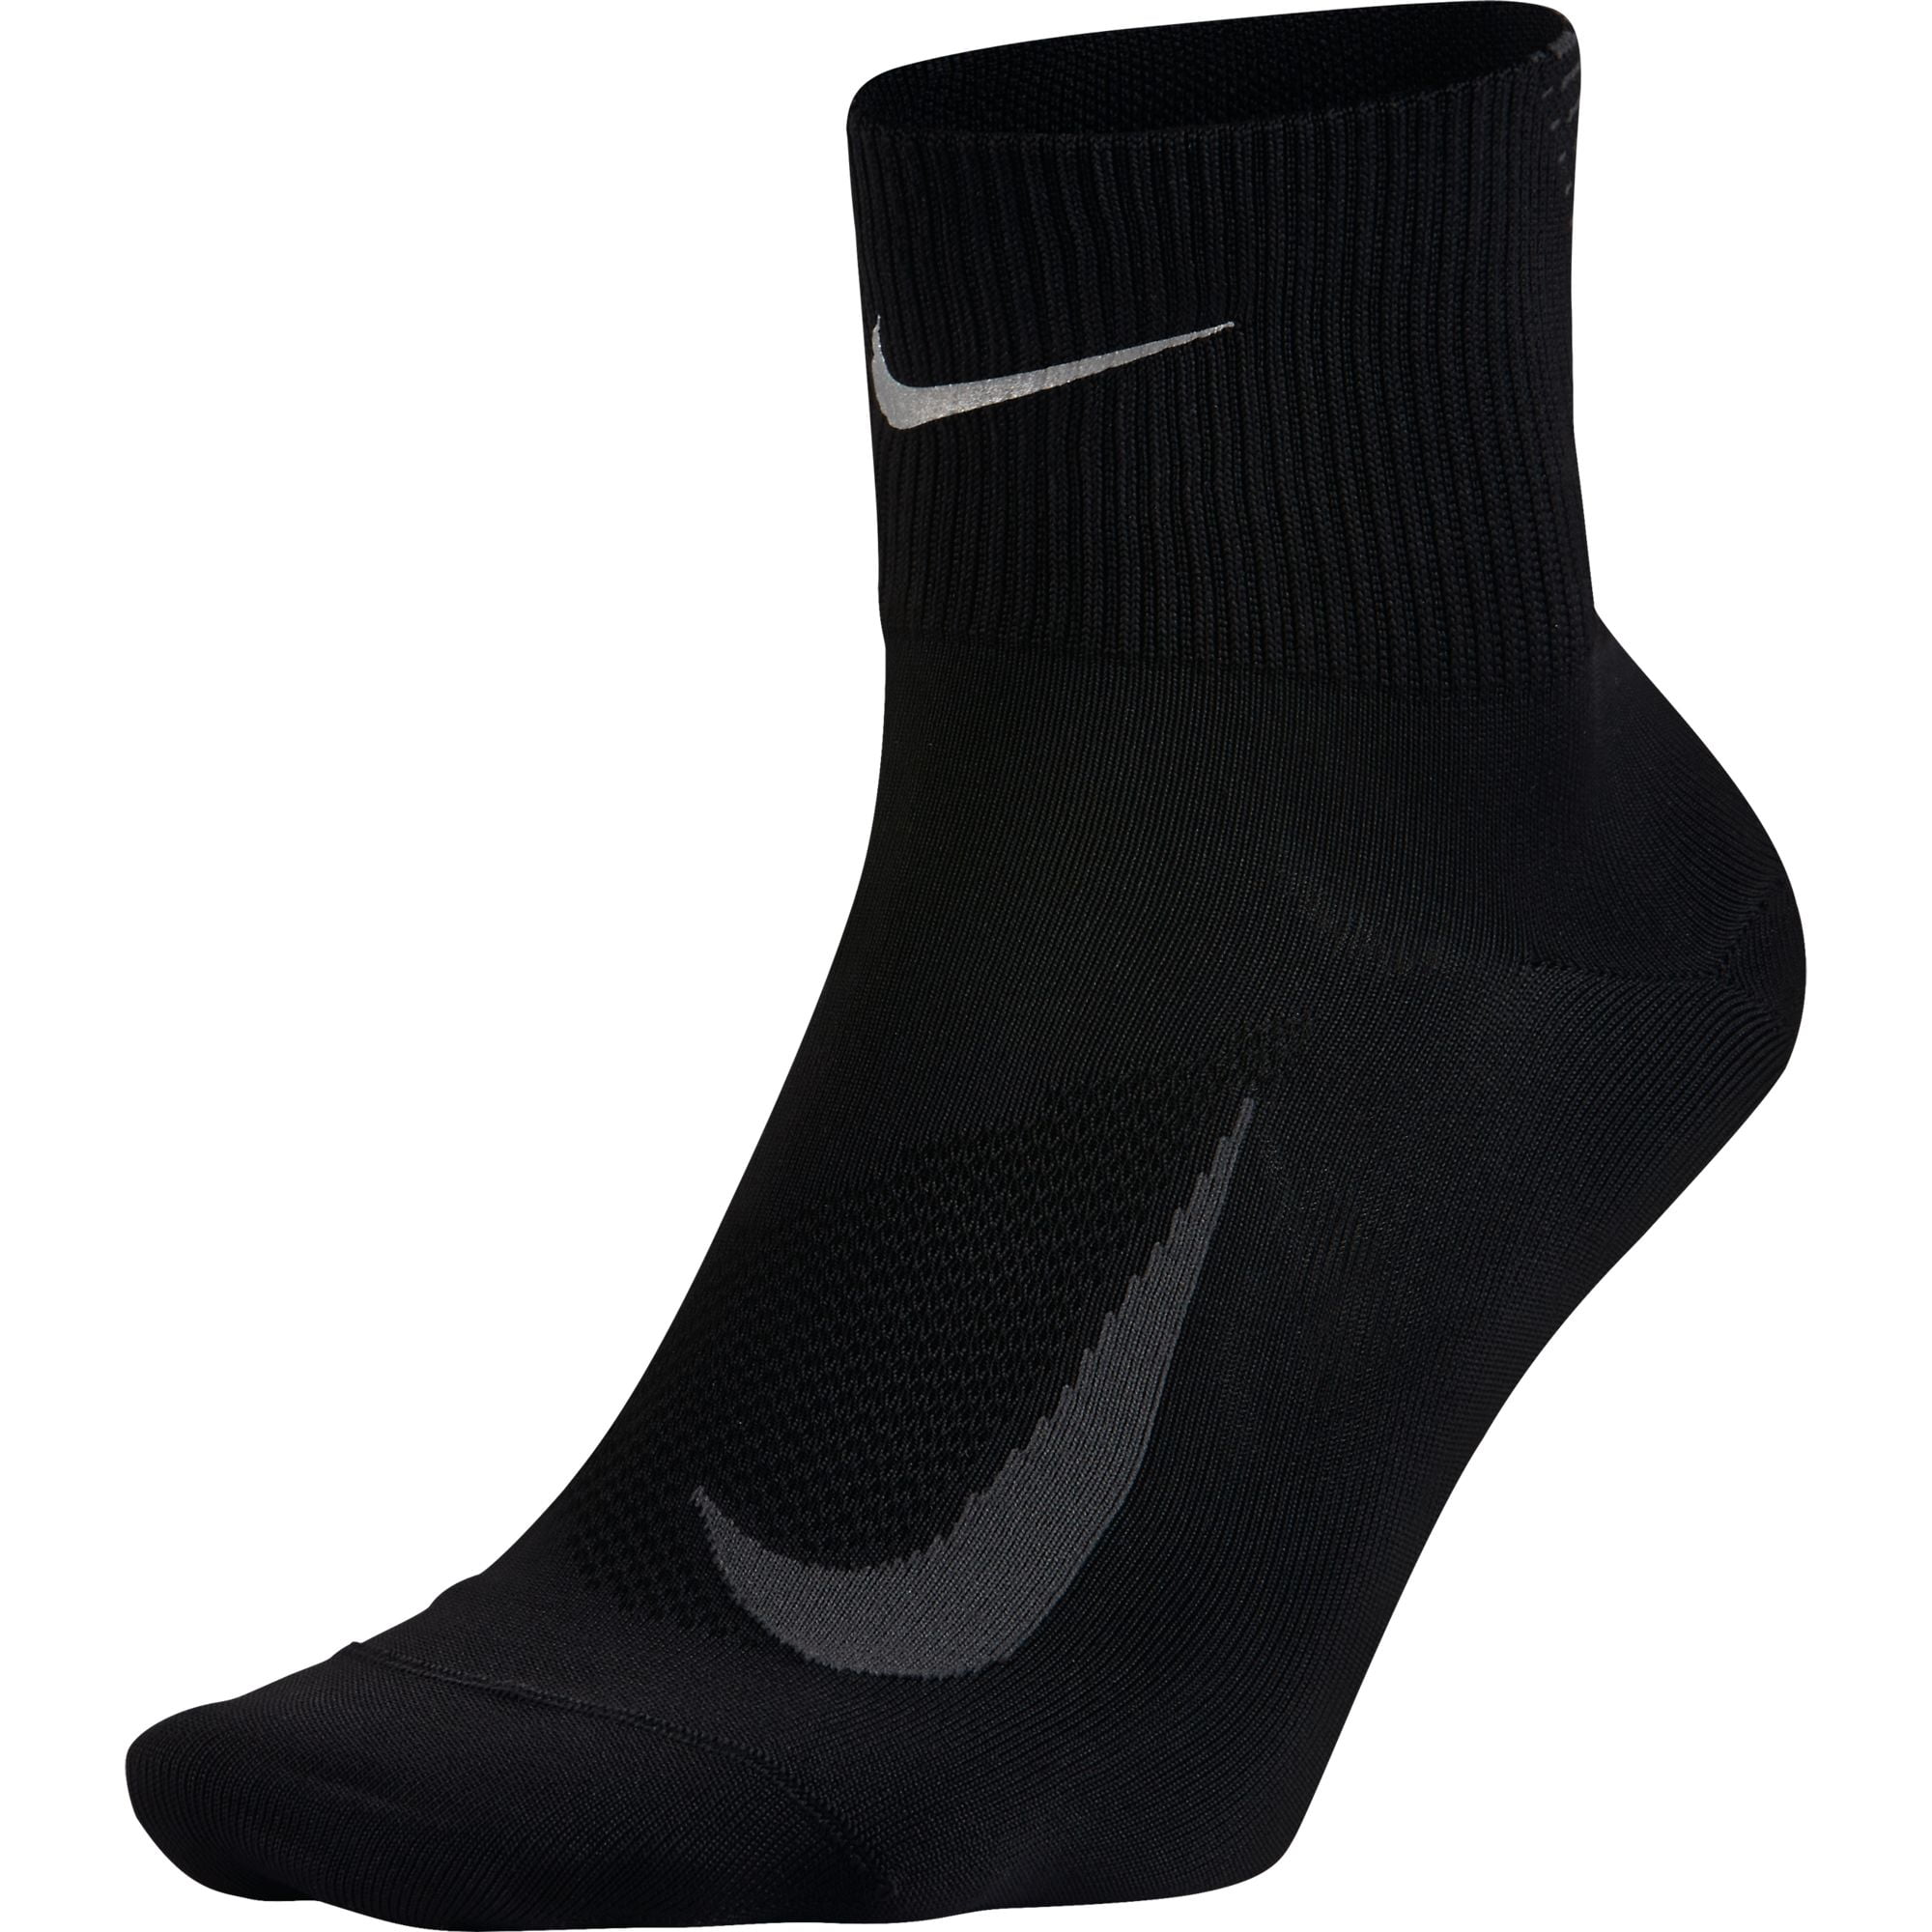 Nike Elite Lightweight 2.0 Quarter Men's Running Socks Black sx5194-010 ...